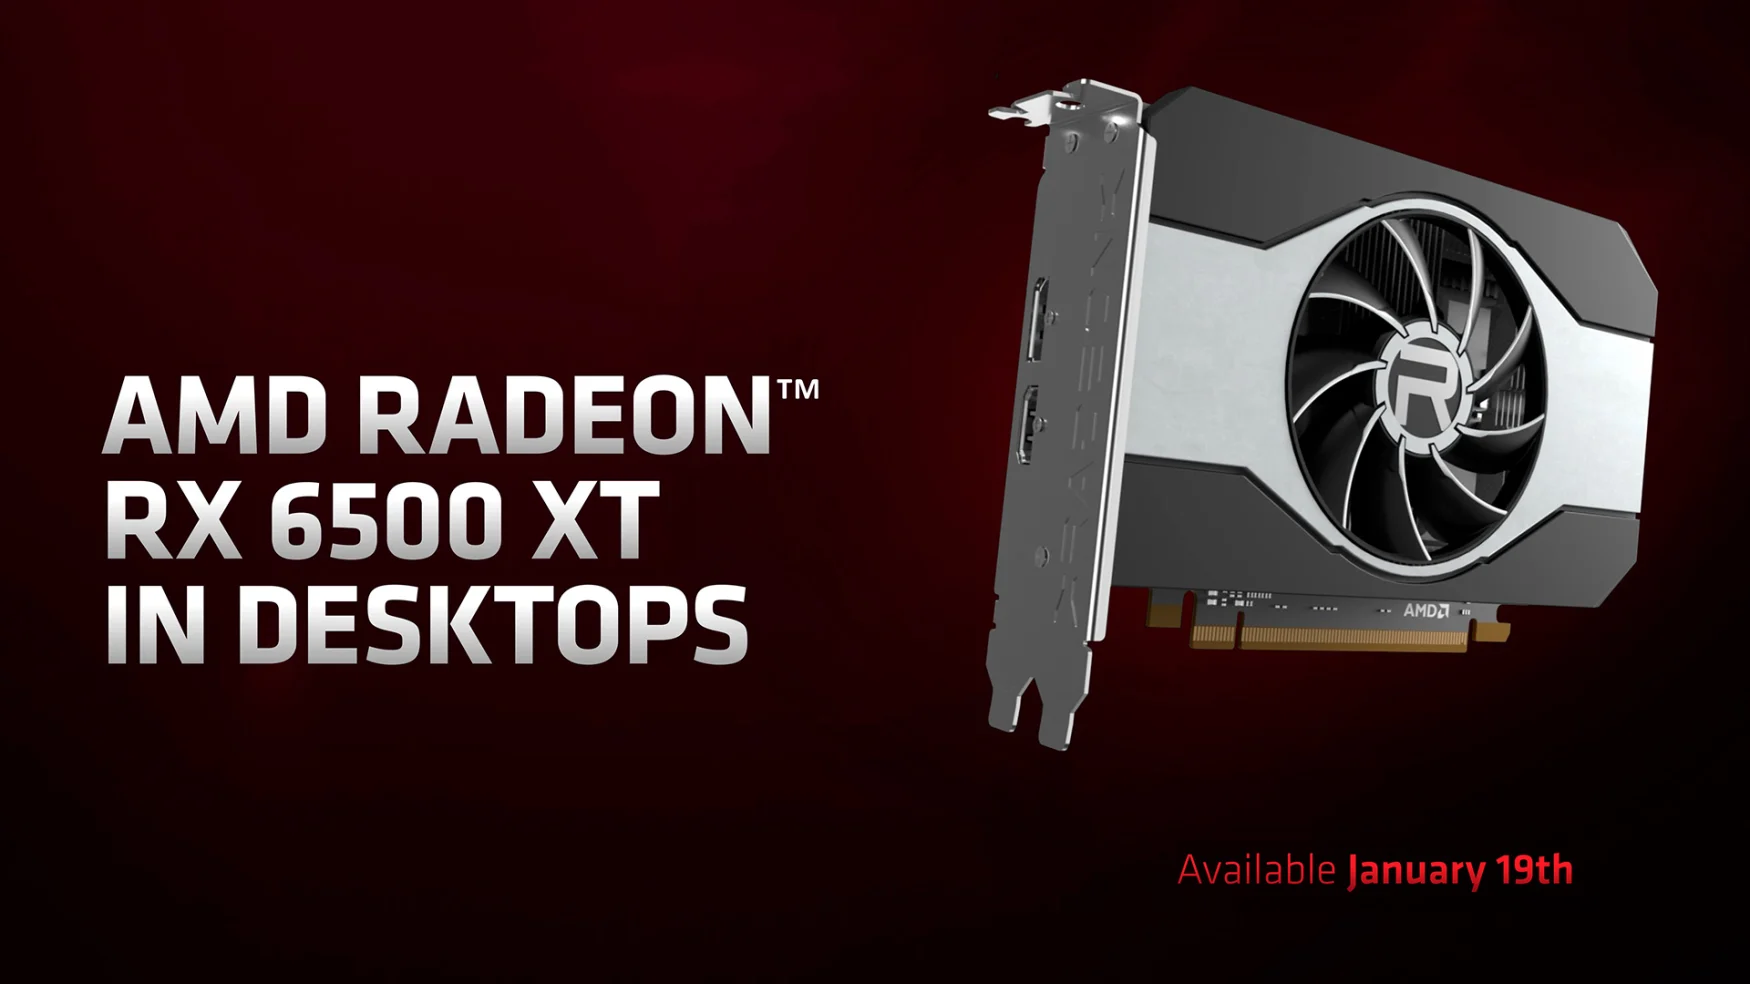 AMD Radeon RX 6500 XT desktop GPU